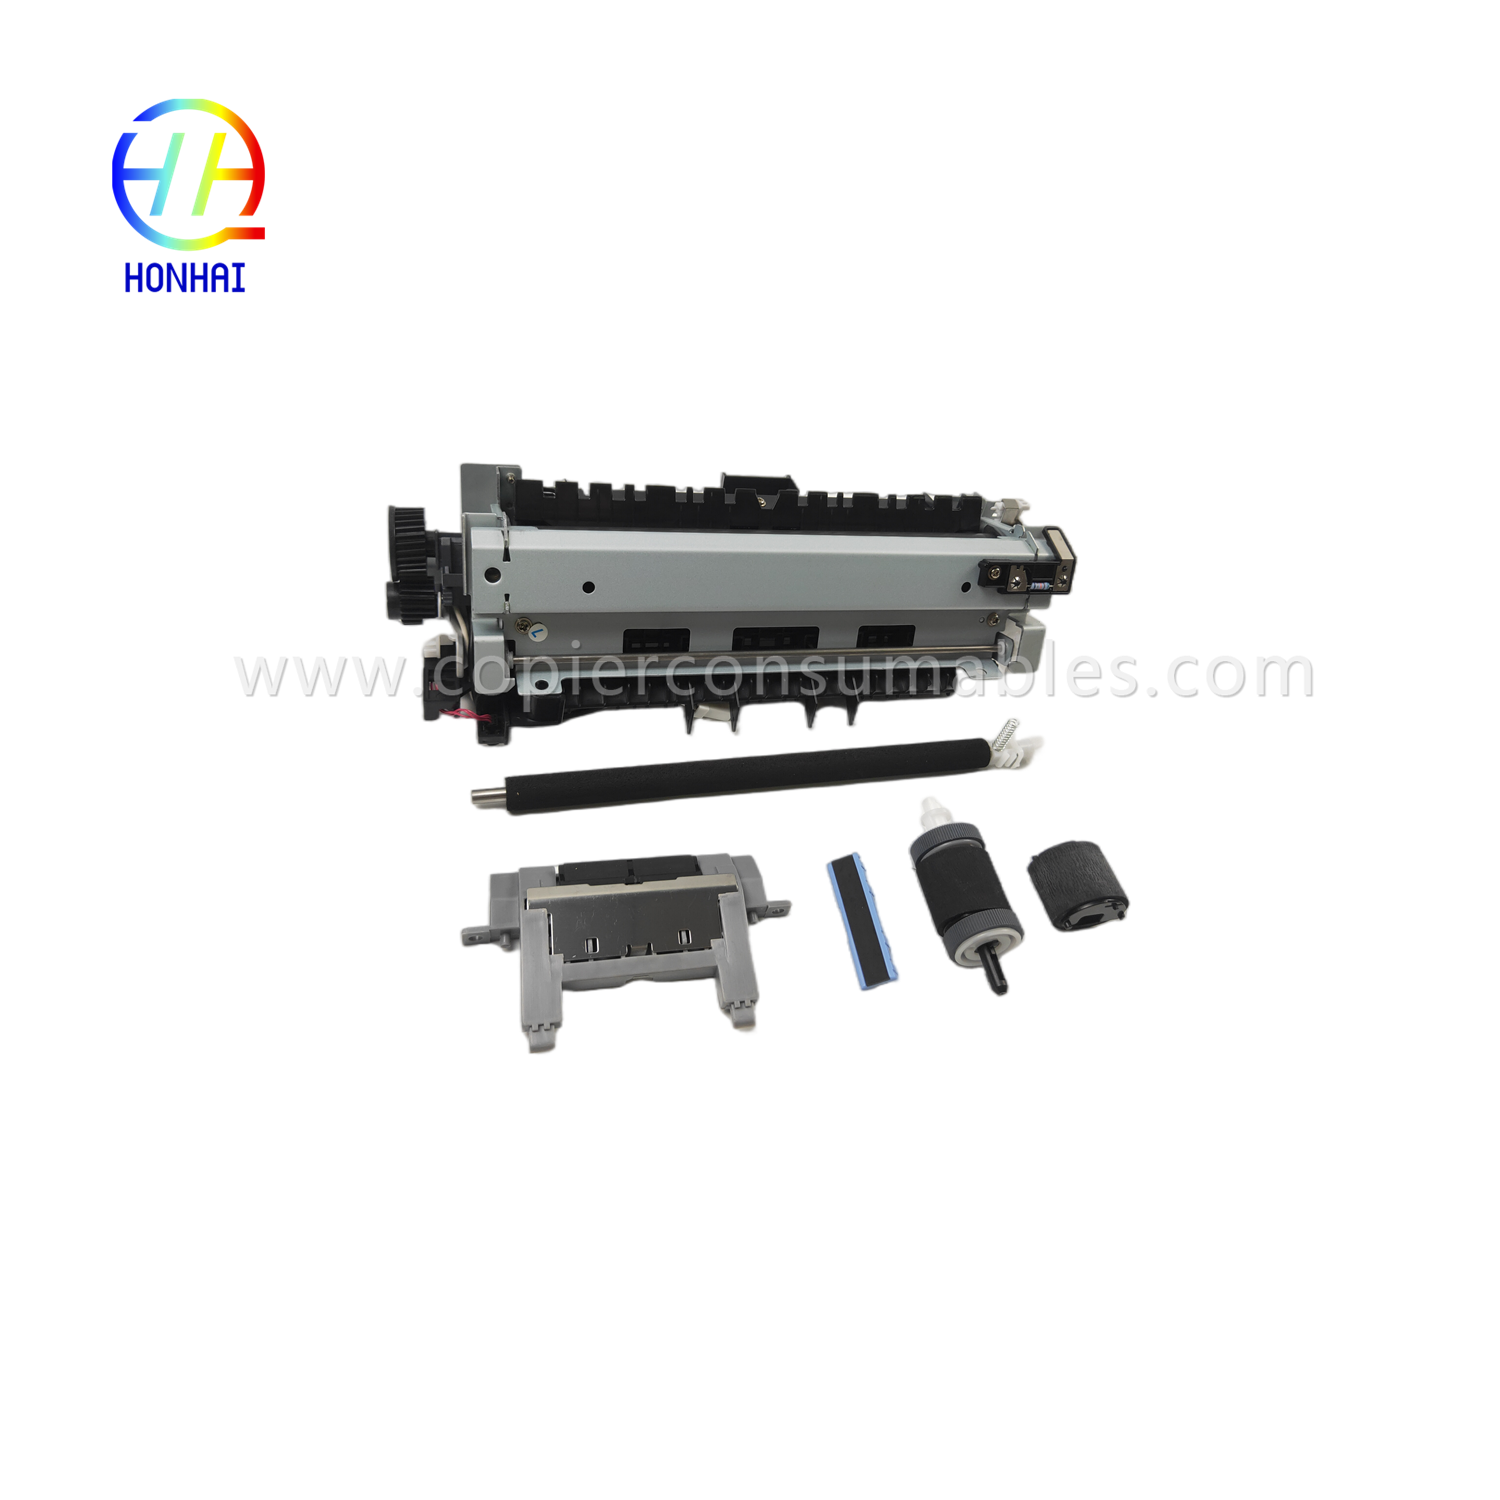 https://c585.goodao.net/maintenance-kit-220v-japan-for-hp-cf116-67903-laserjet-enterprise-500-mfp-m525-flow-mfp-m525c-pro-mfp-m521-includes- i-fuser-transfer-roller-tray-1-separation-pad-tray-2-roller-tray-2-separation-pad-product/